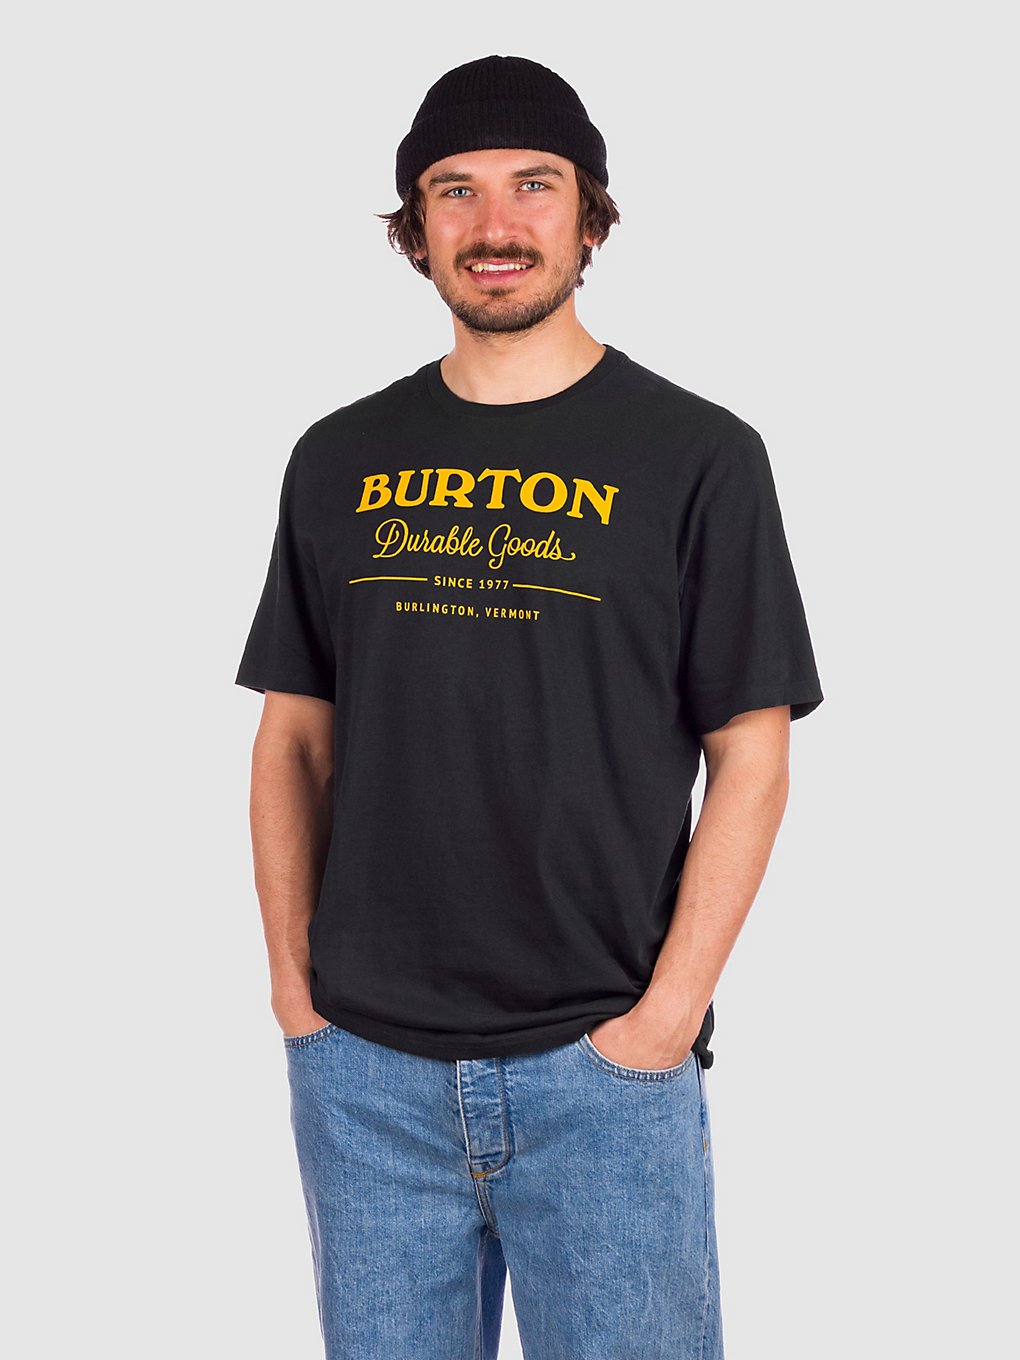 Burton Durable Goods T-Shirt true black kaufen